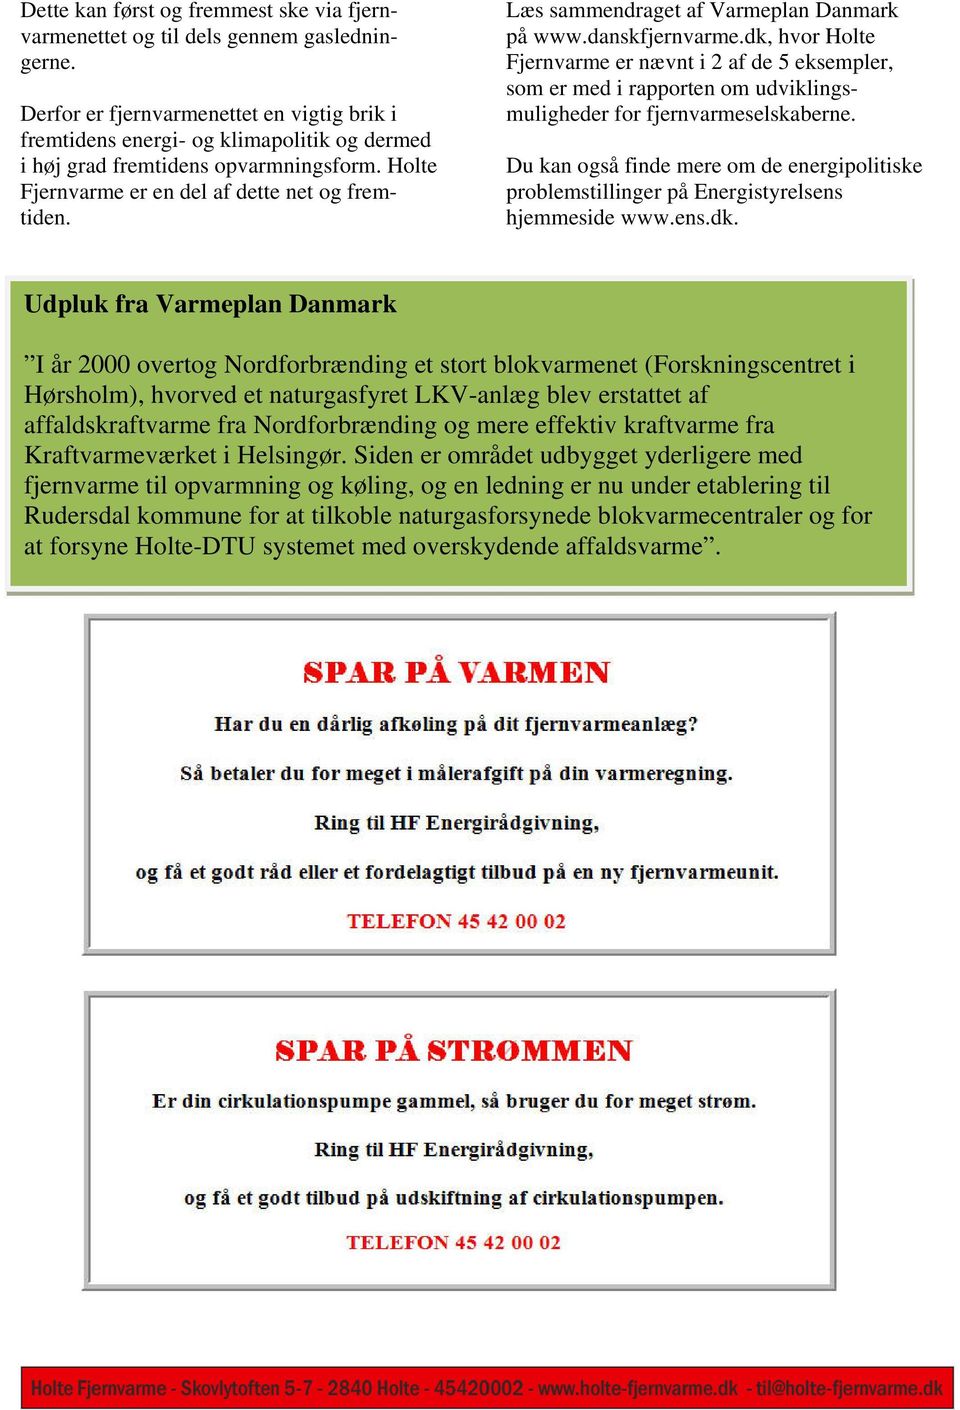 Læs sammendraget af Varmeplan Danmark på www.danskfjernvarme.dk, hvor Holte Fjernvarme er nævnt i 2 af de 5 eksempler, som er med i rapporten om udviklingsmuligheder for fjernvarmeselskaberne.